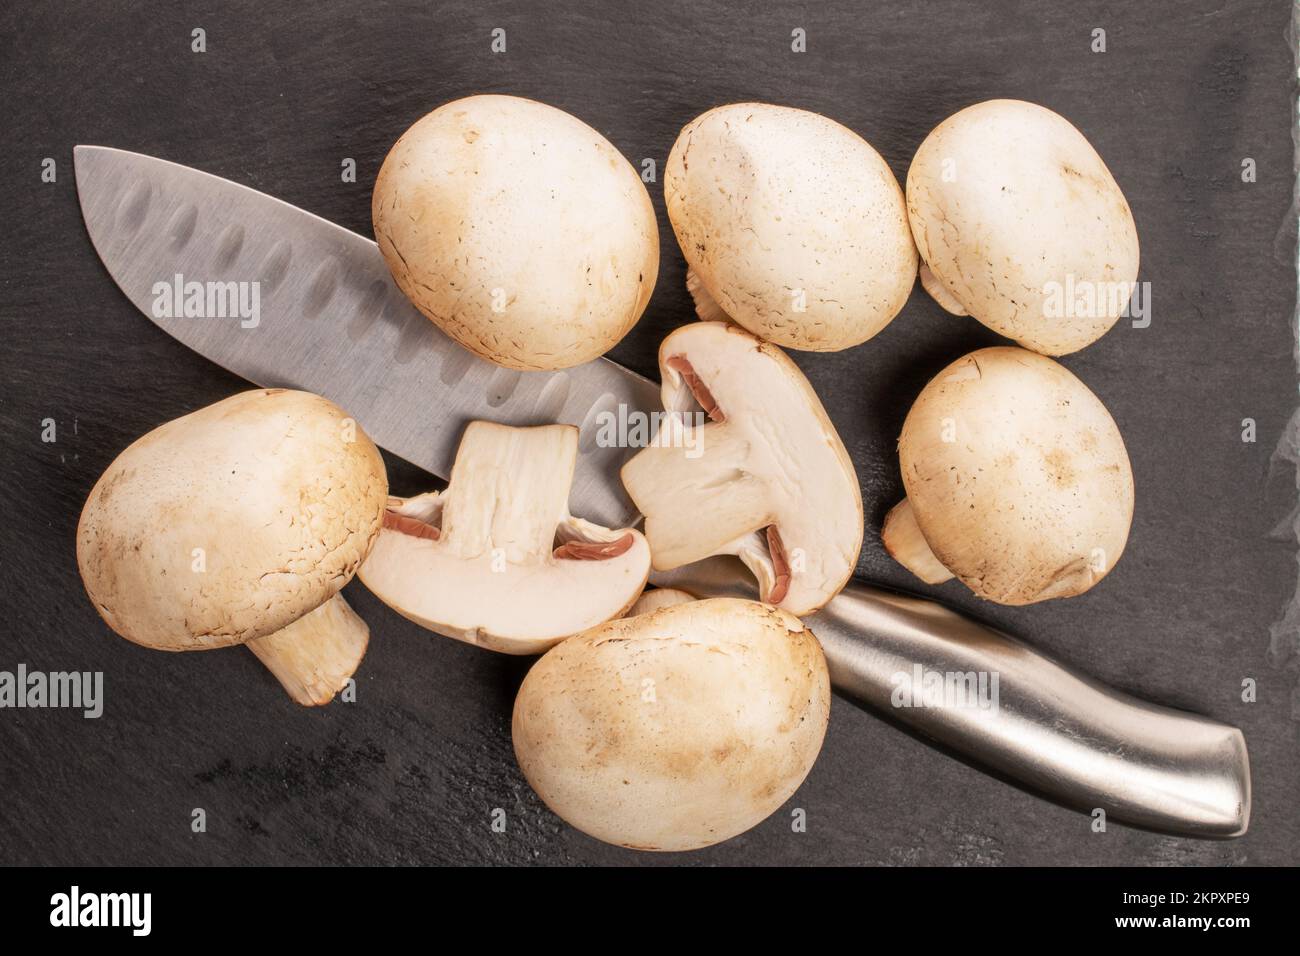 Diversi funghi porcini interi freschi e appetitosi con coltello in metallo su pietra ardesia, vista dall'alto. Foto Stock